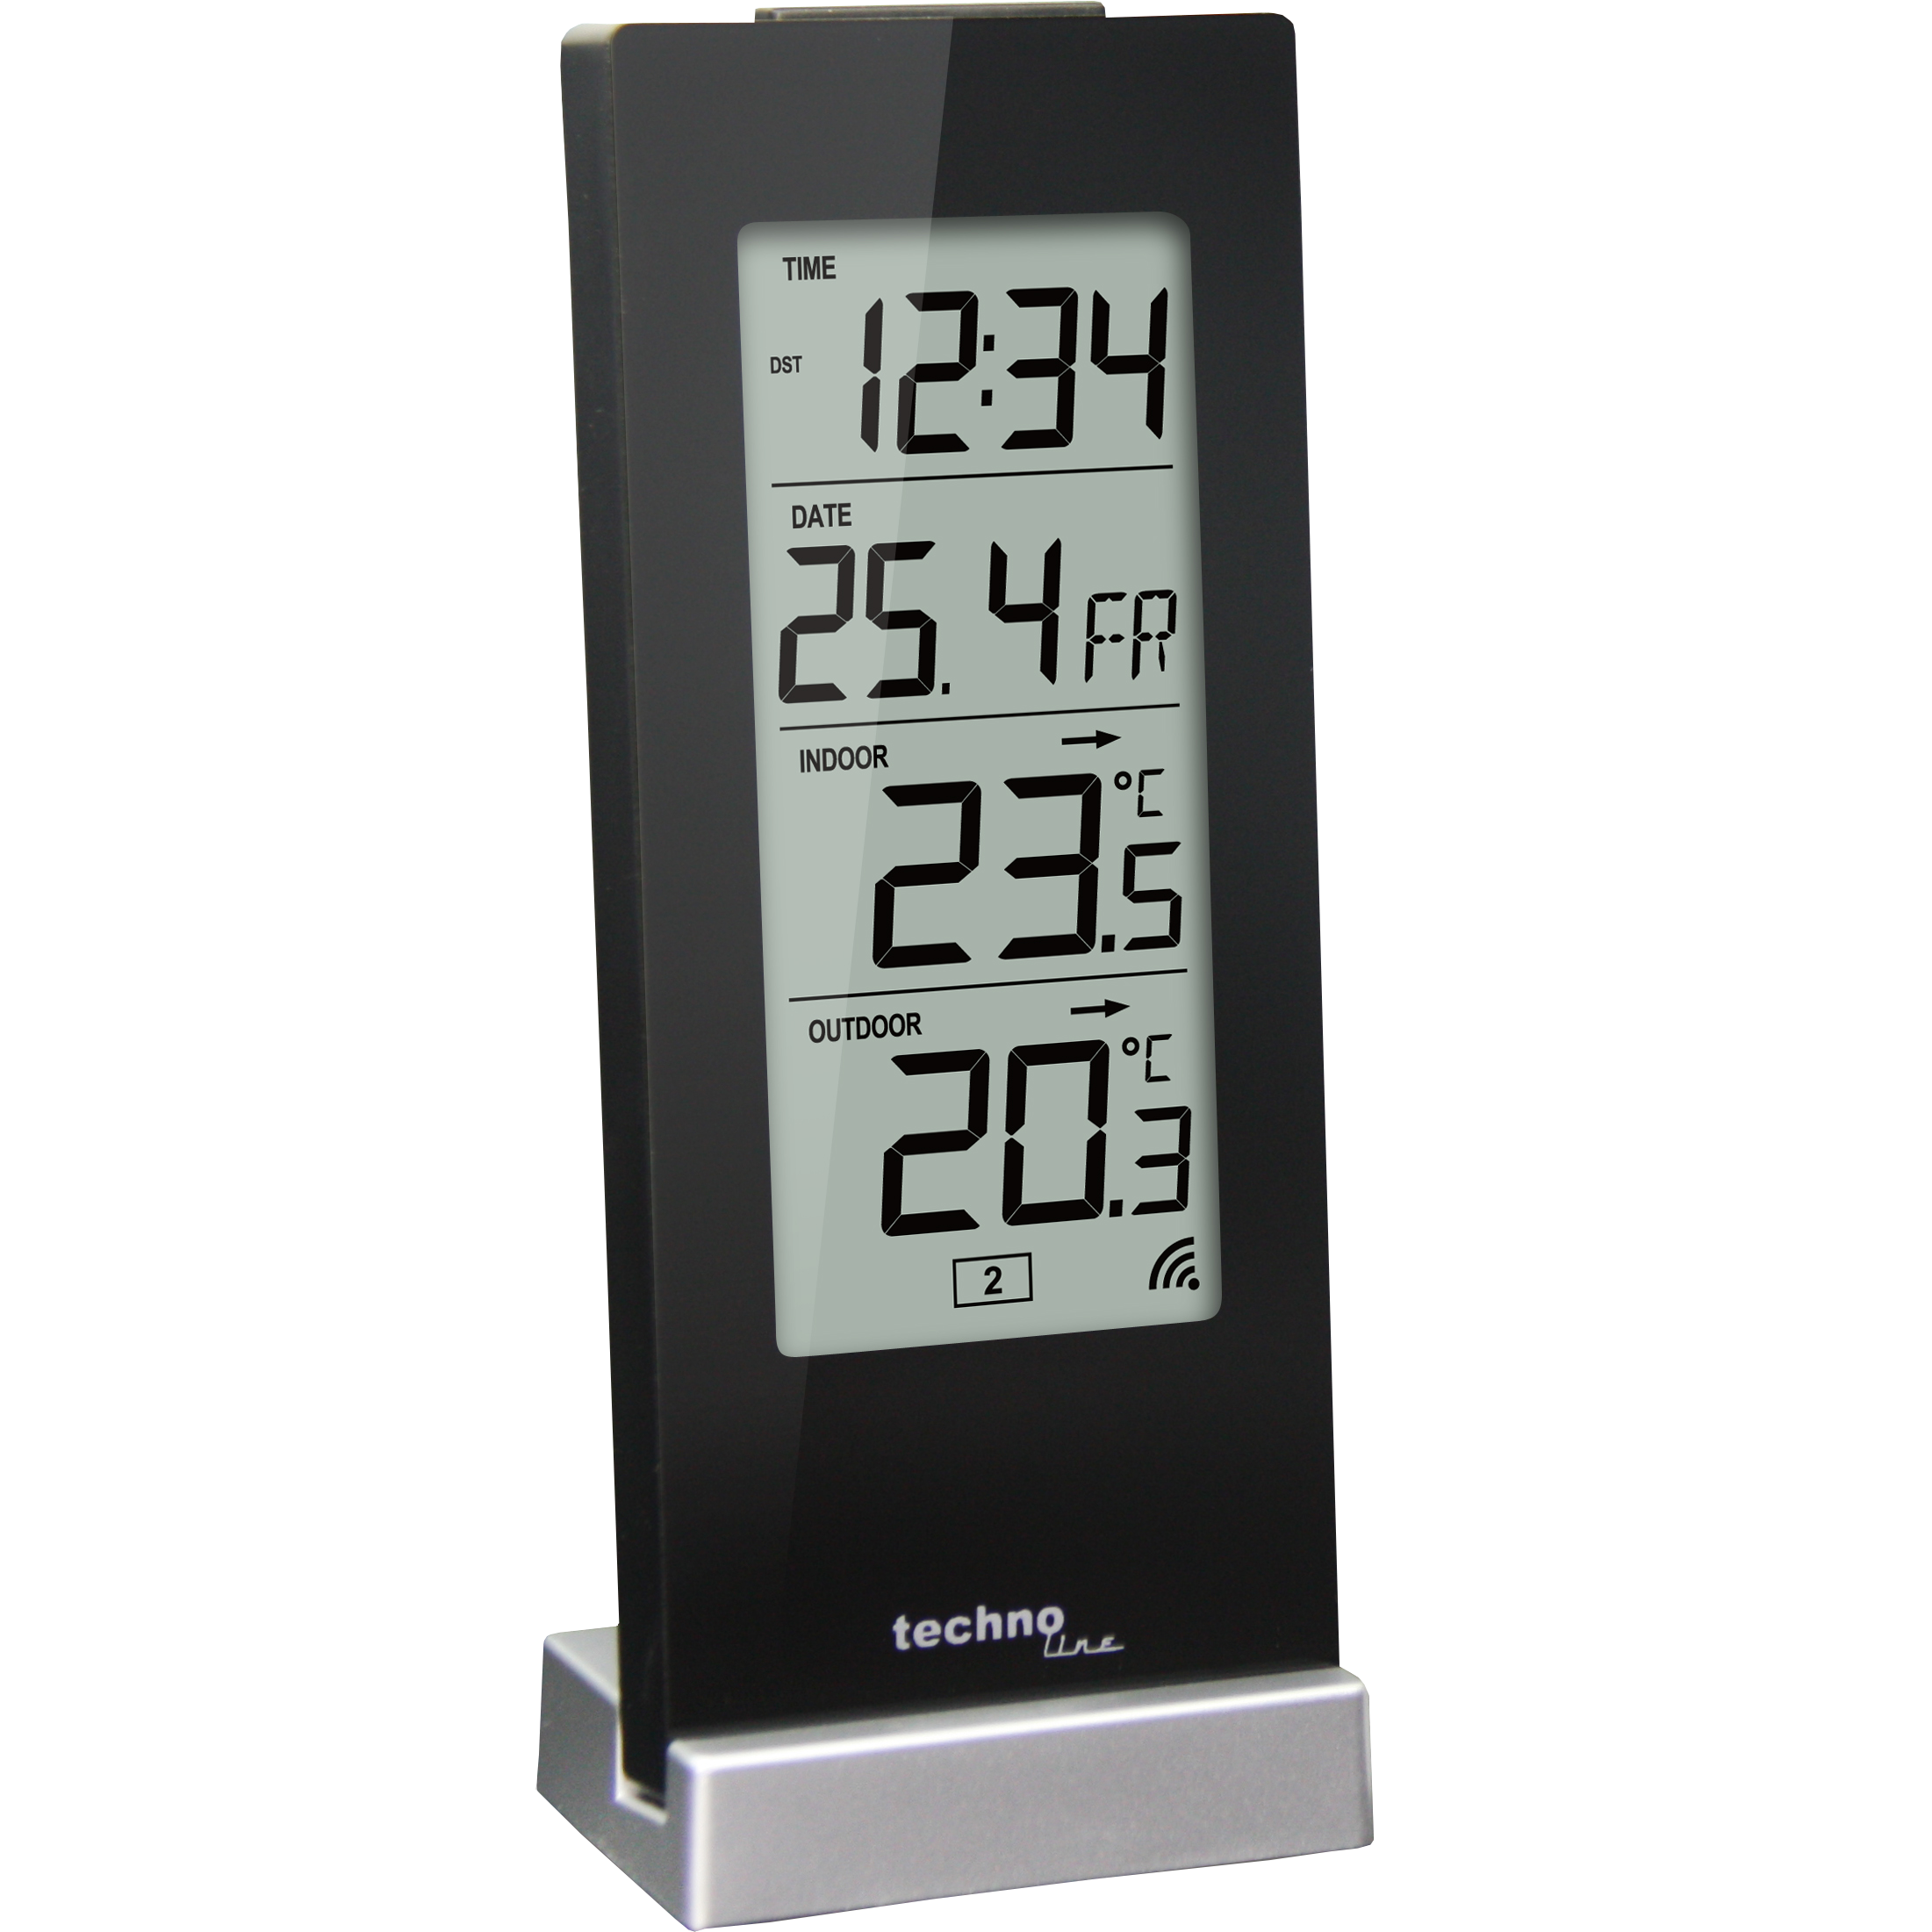 WS 9767 - moderne Wetterstation mit Temperaturtendenzanzeige